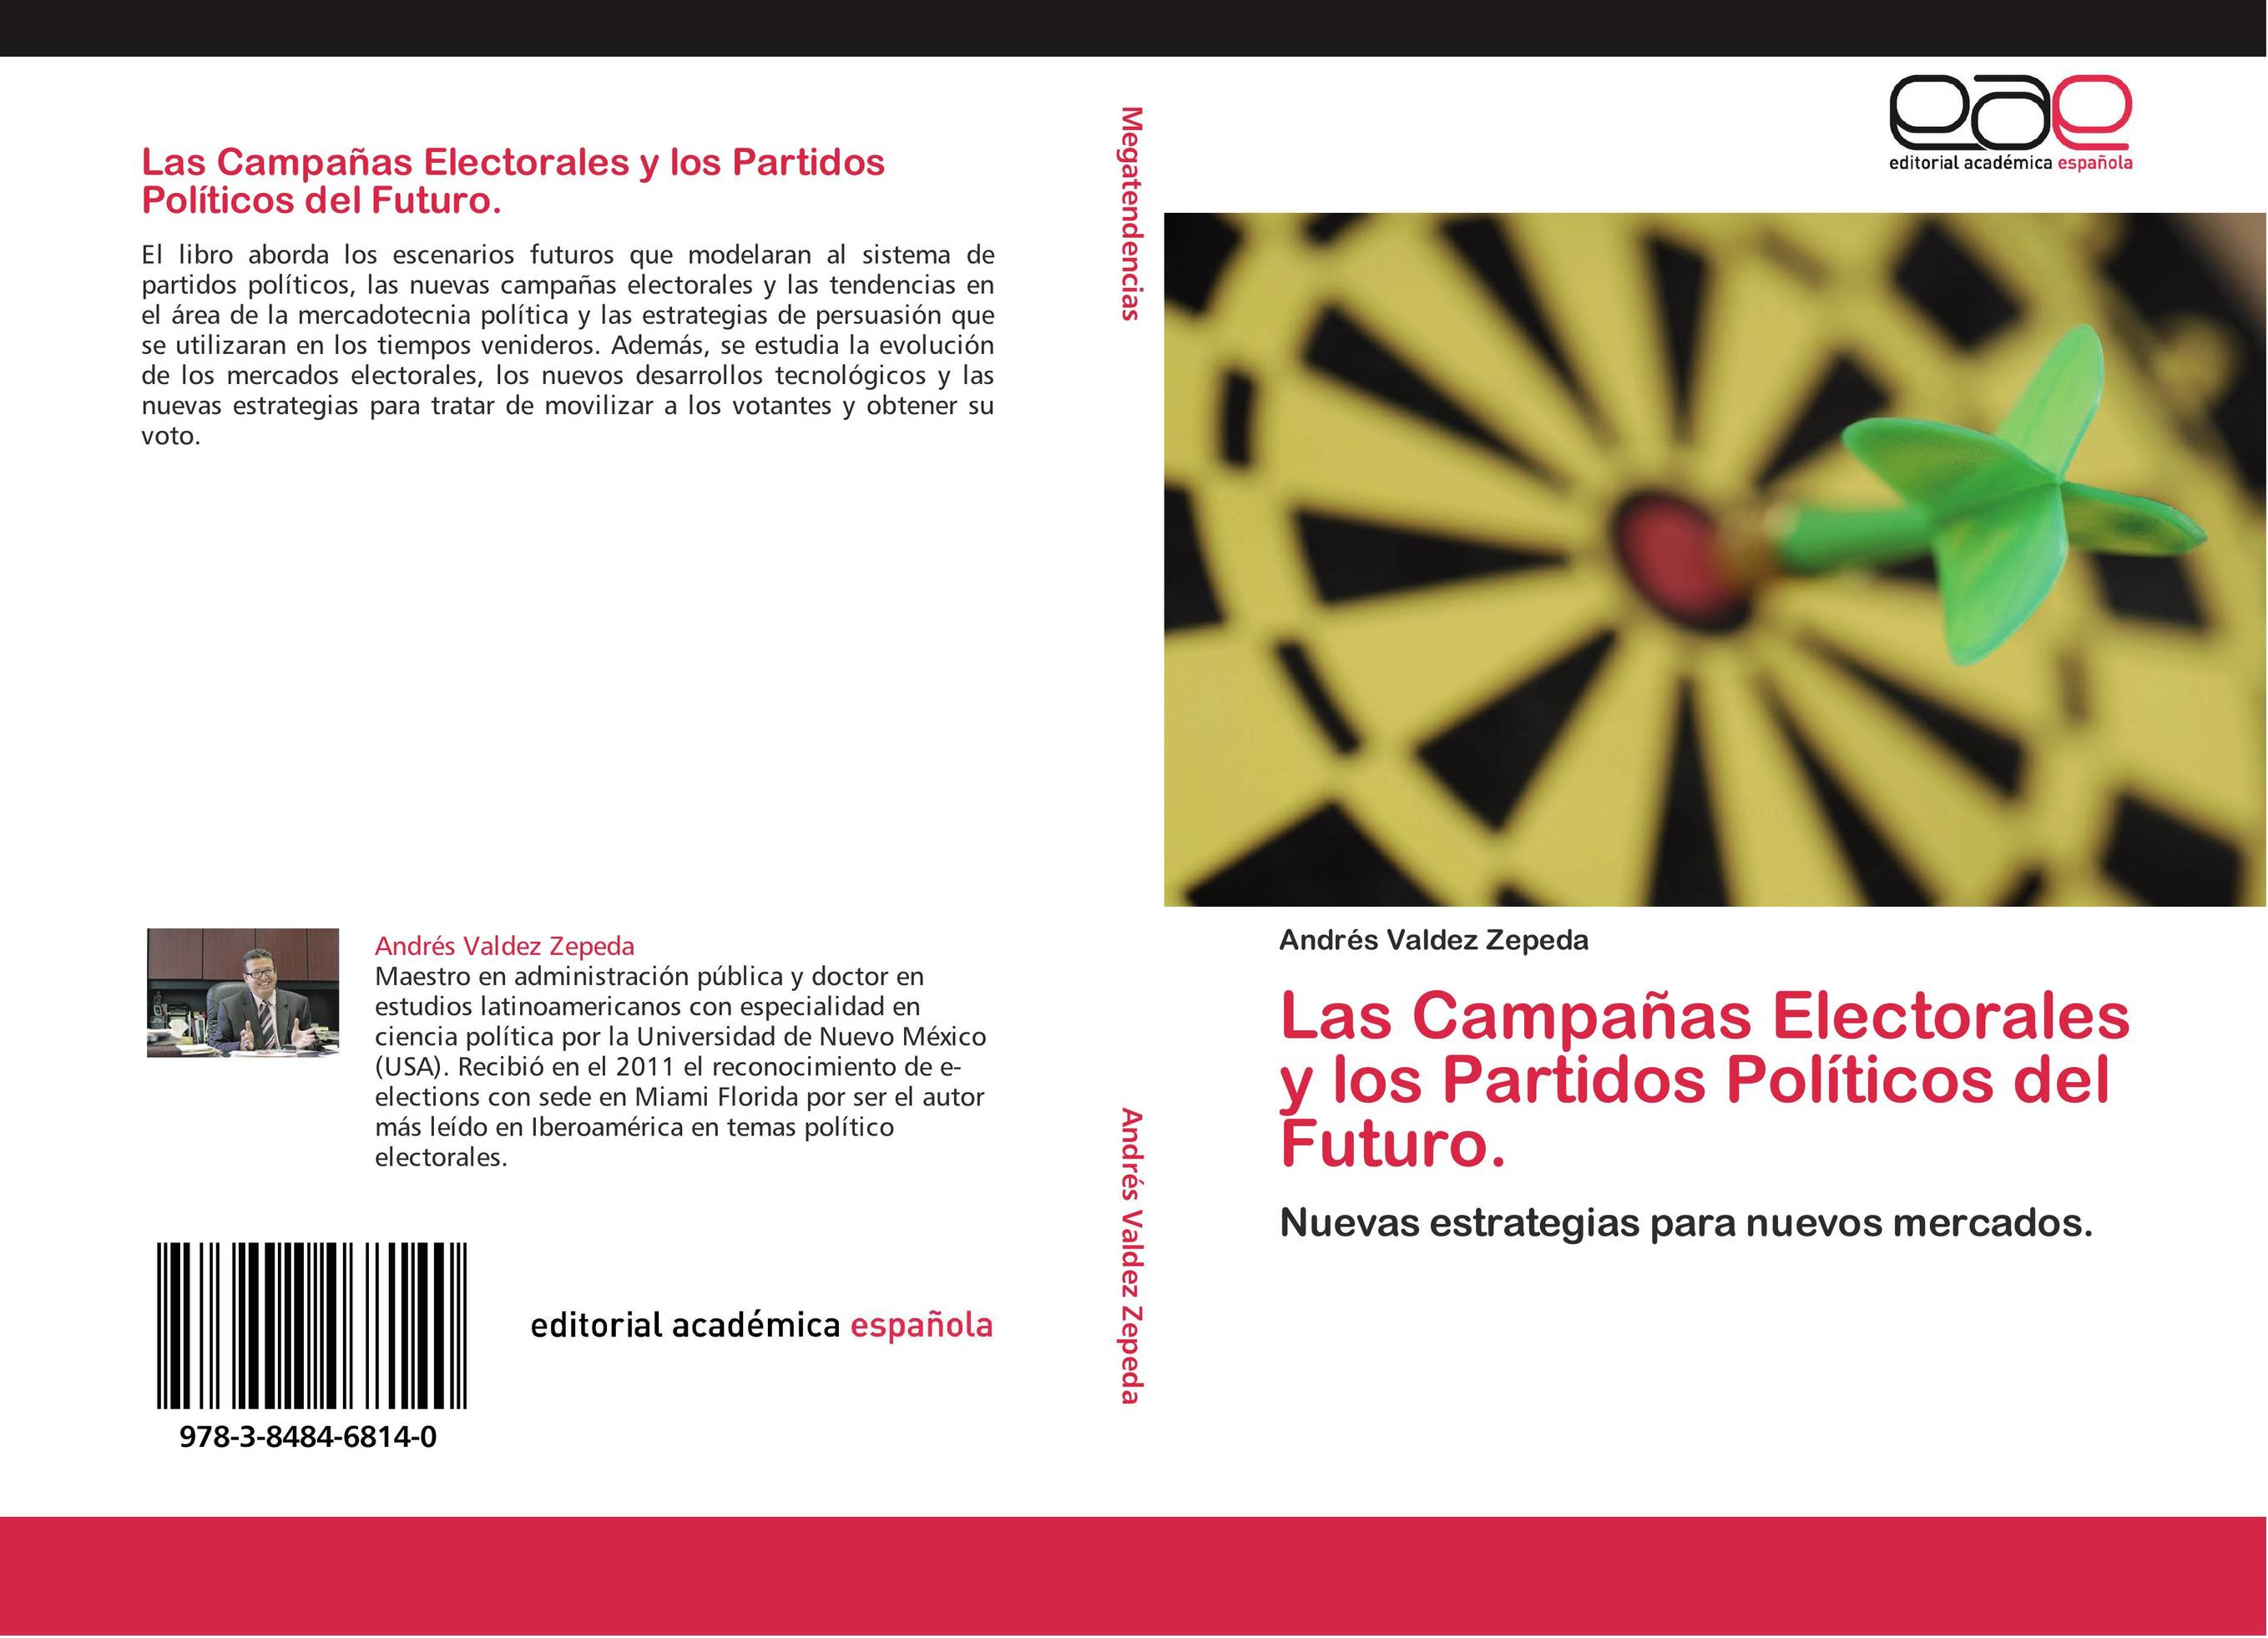 Las Campañas Electorales y los Partidos Políticos del Futuro.